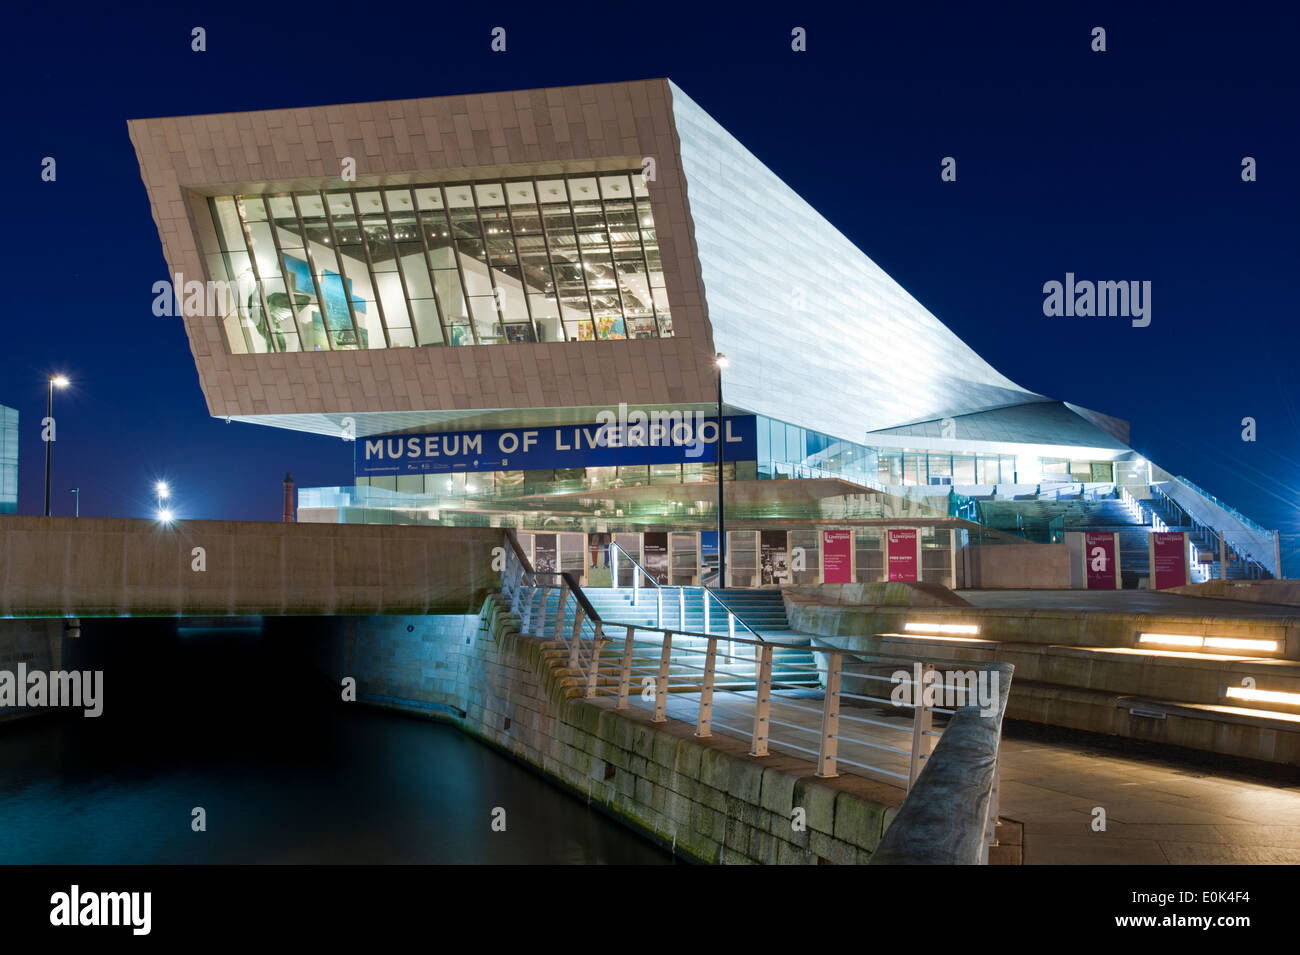 Museum von Liverpool in der Nacht, dem Molenkopf Liverpool Waterfront, Liverpool, Merseyside, England, Vereinigtes Königreich Stockfoto